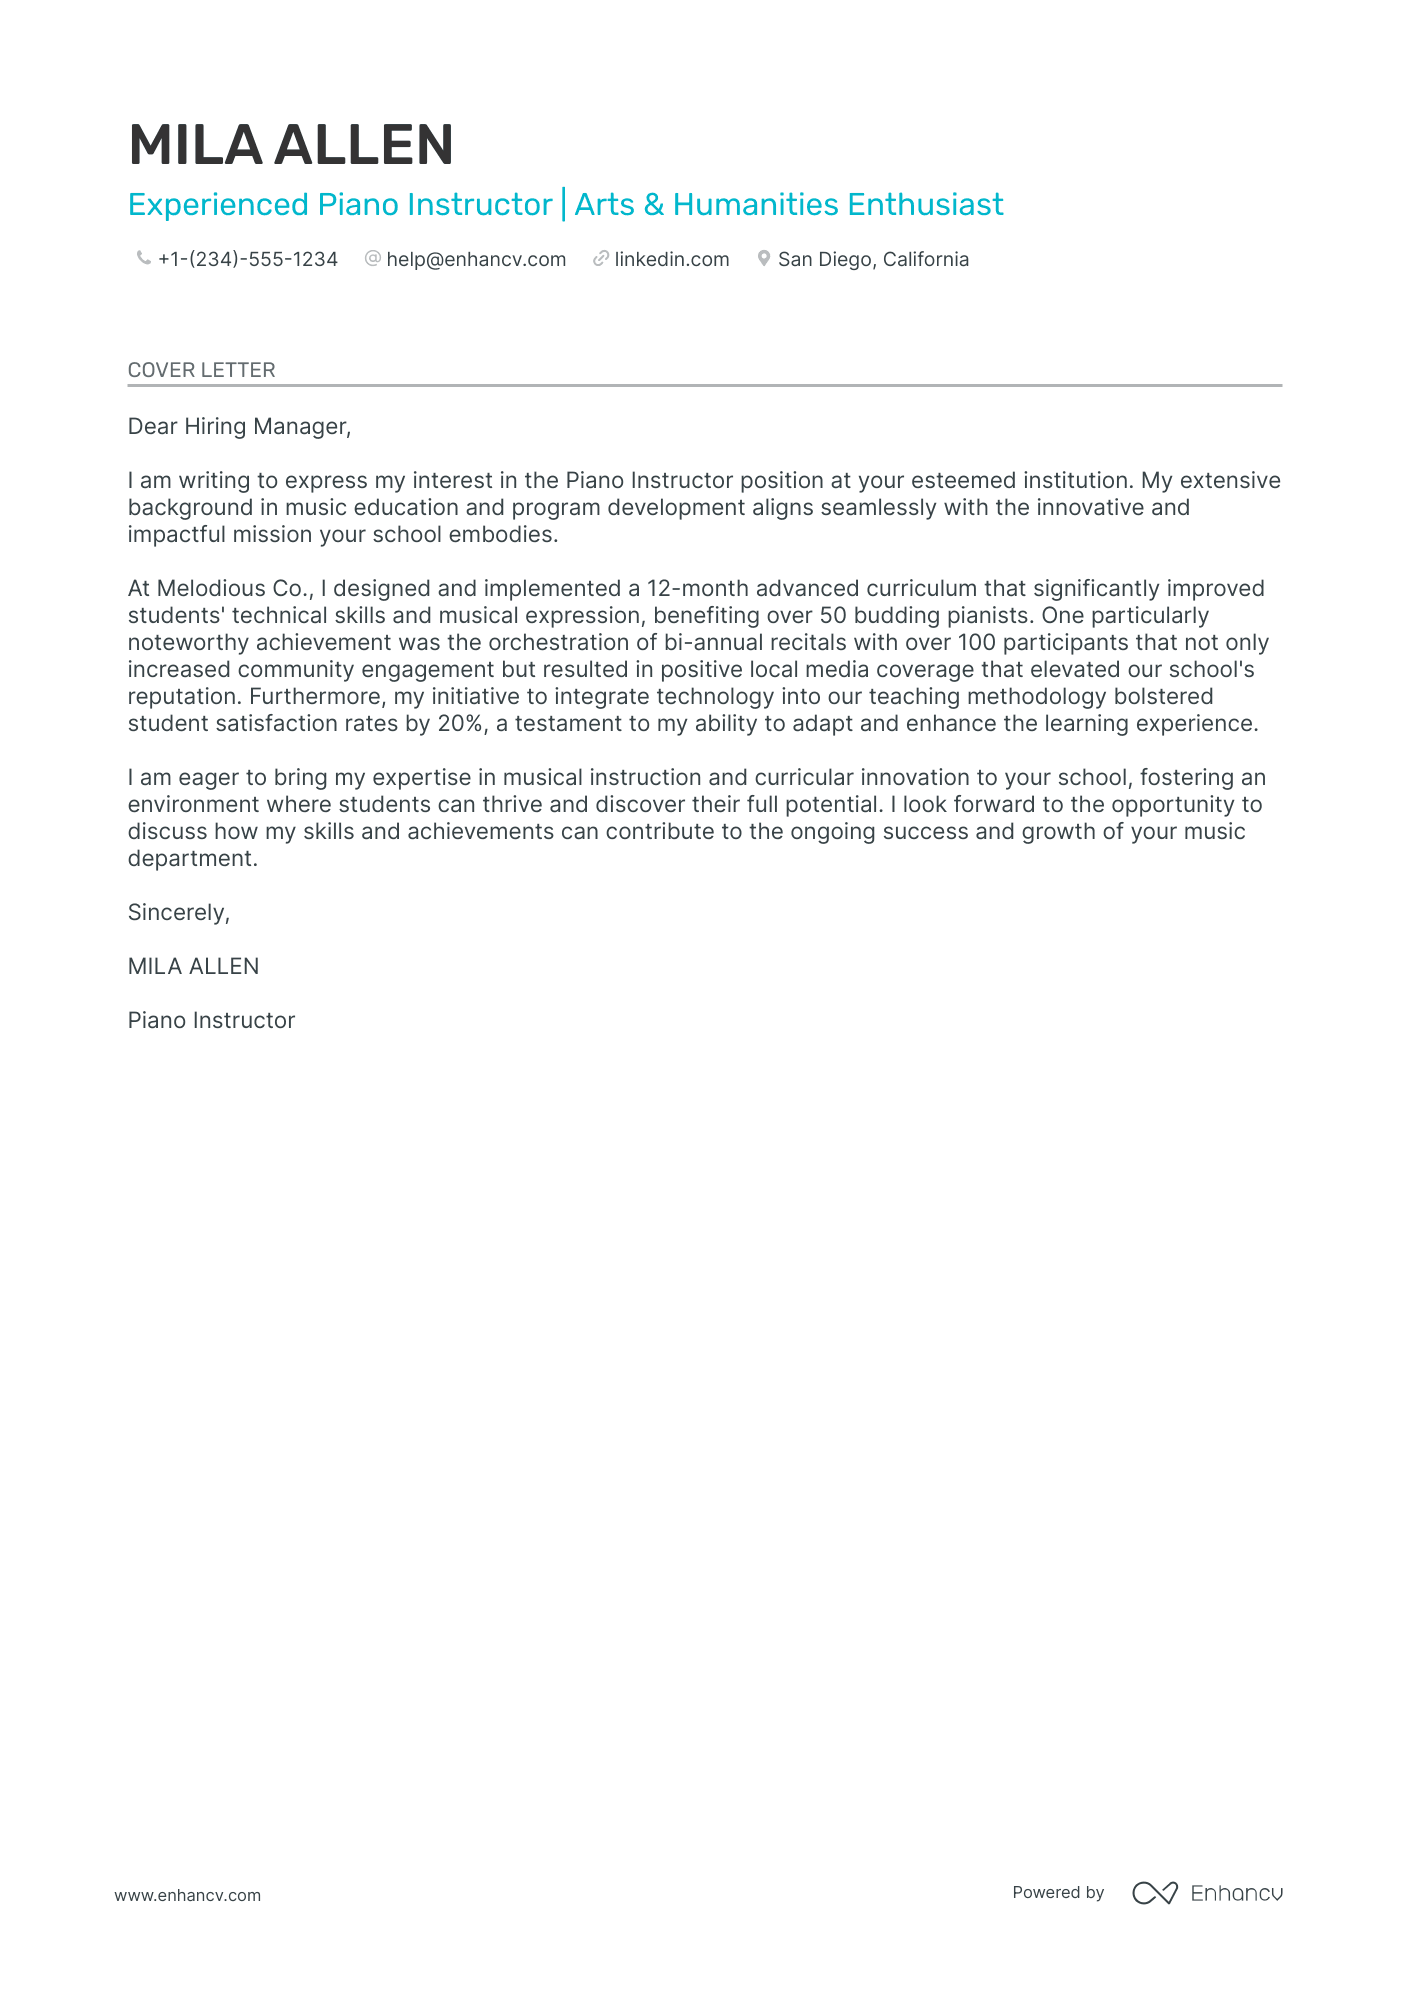 cover letter for business teacher position